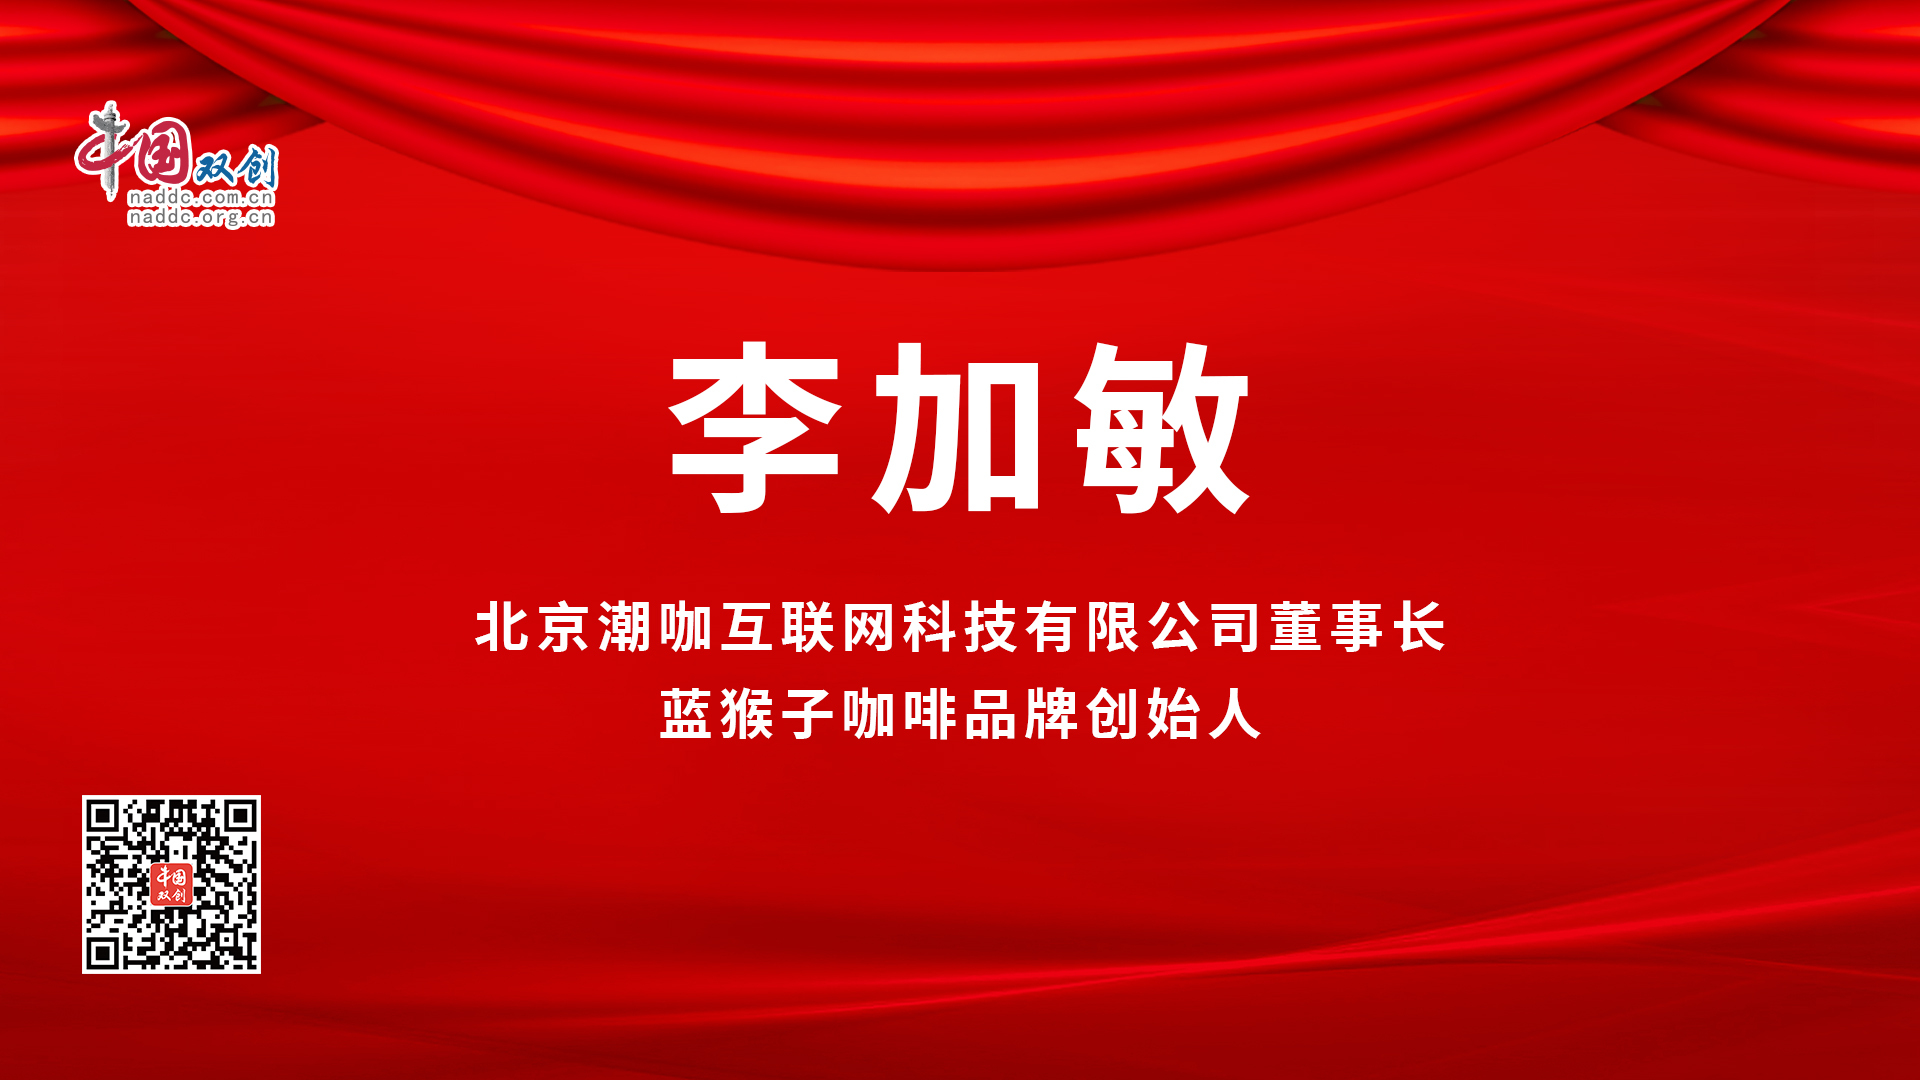 北京潮咖互联网科技有限公司代表发言